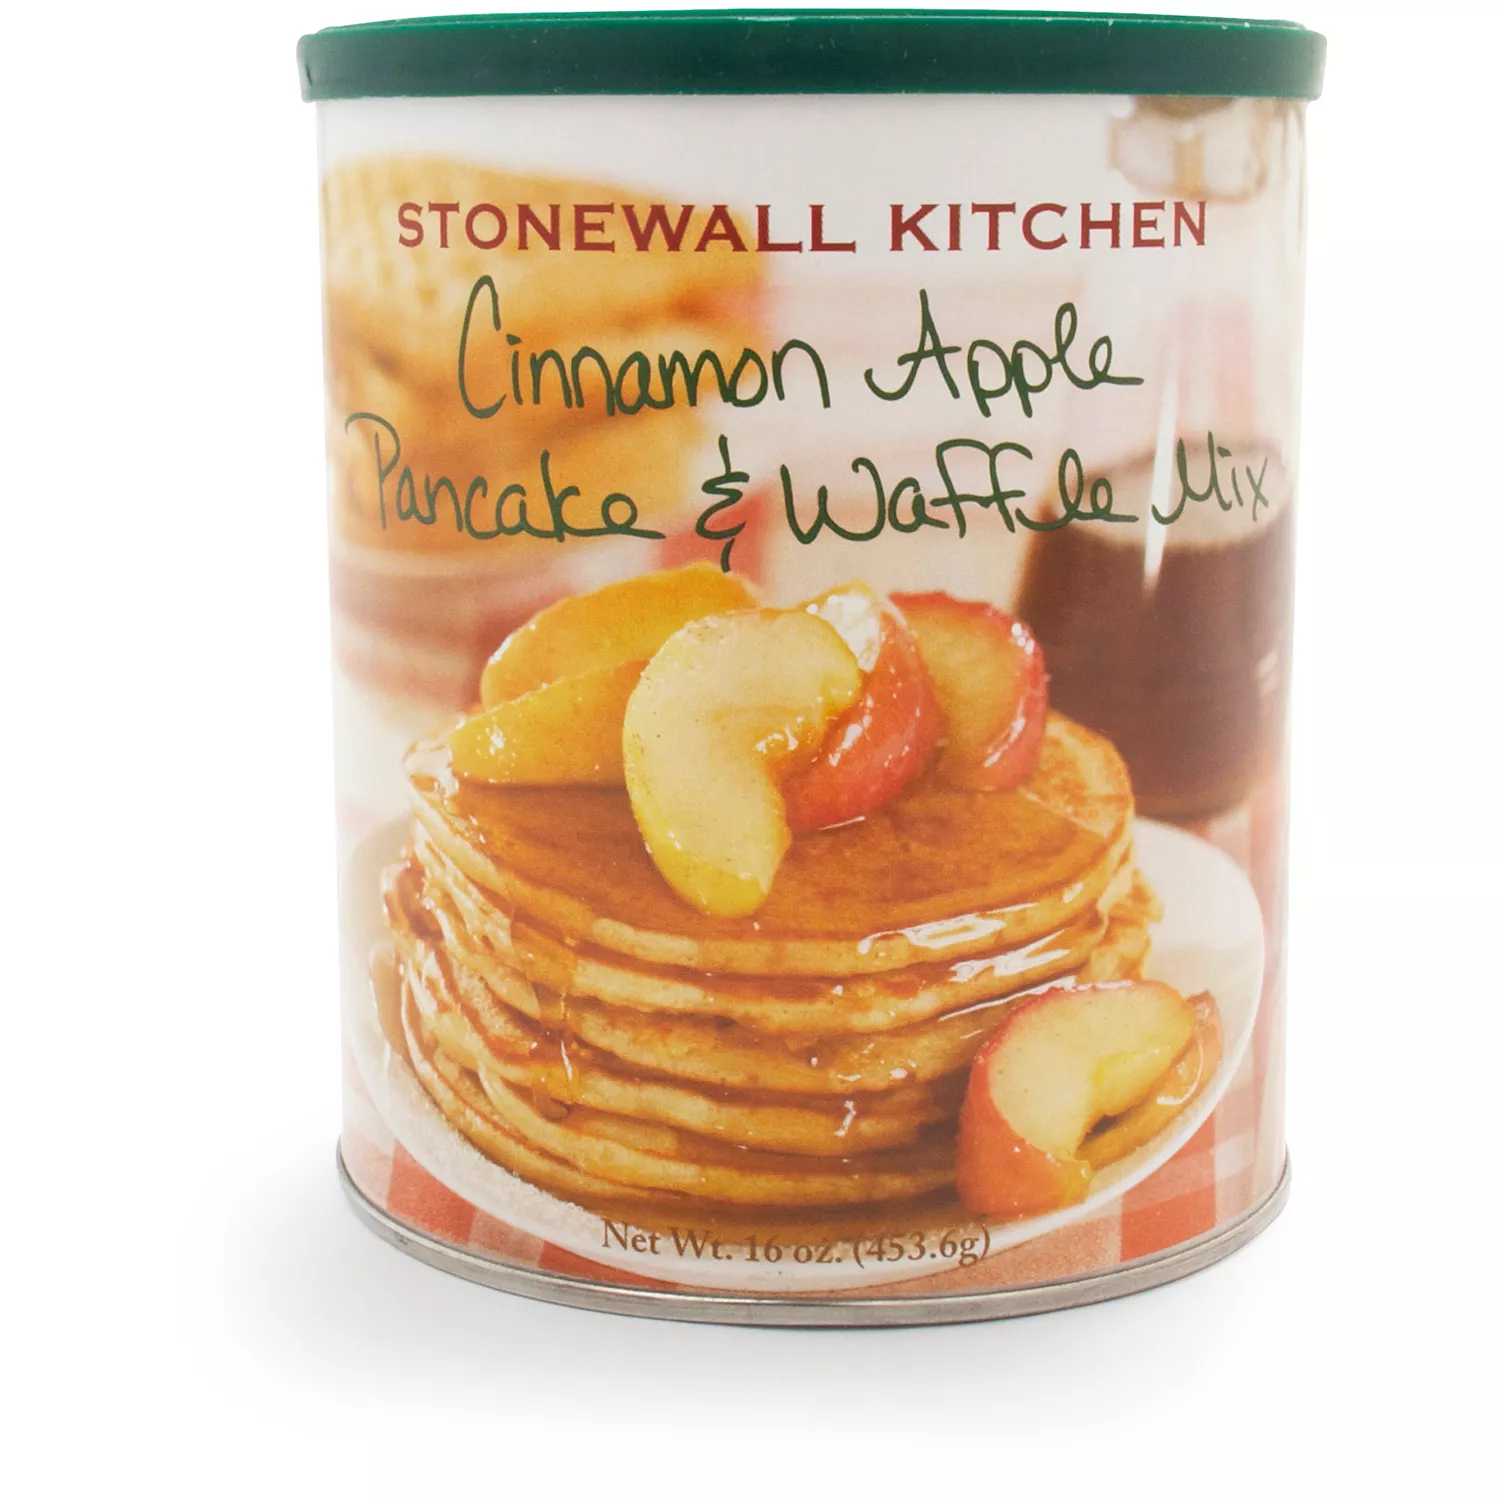 Stonewall Kitchen Cinnamon Apple Pancake and Waffle Mix, 16 oz.